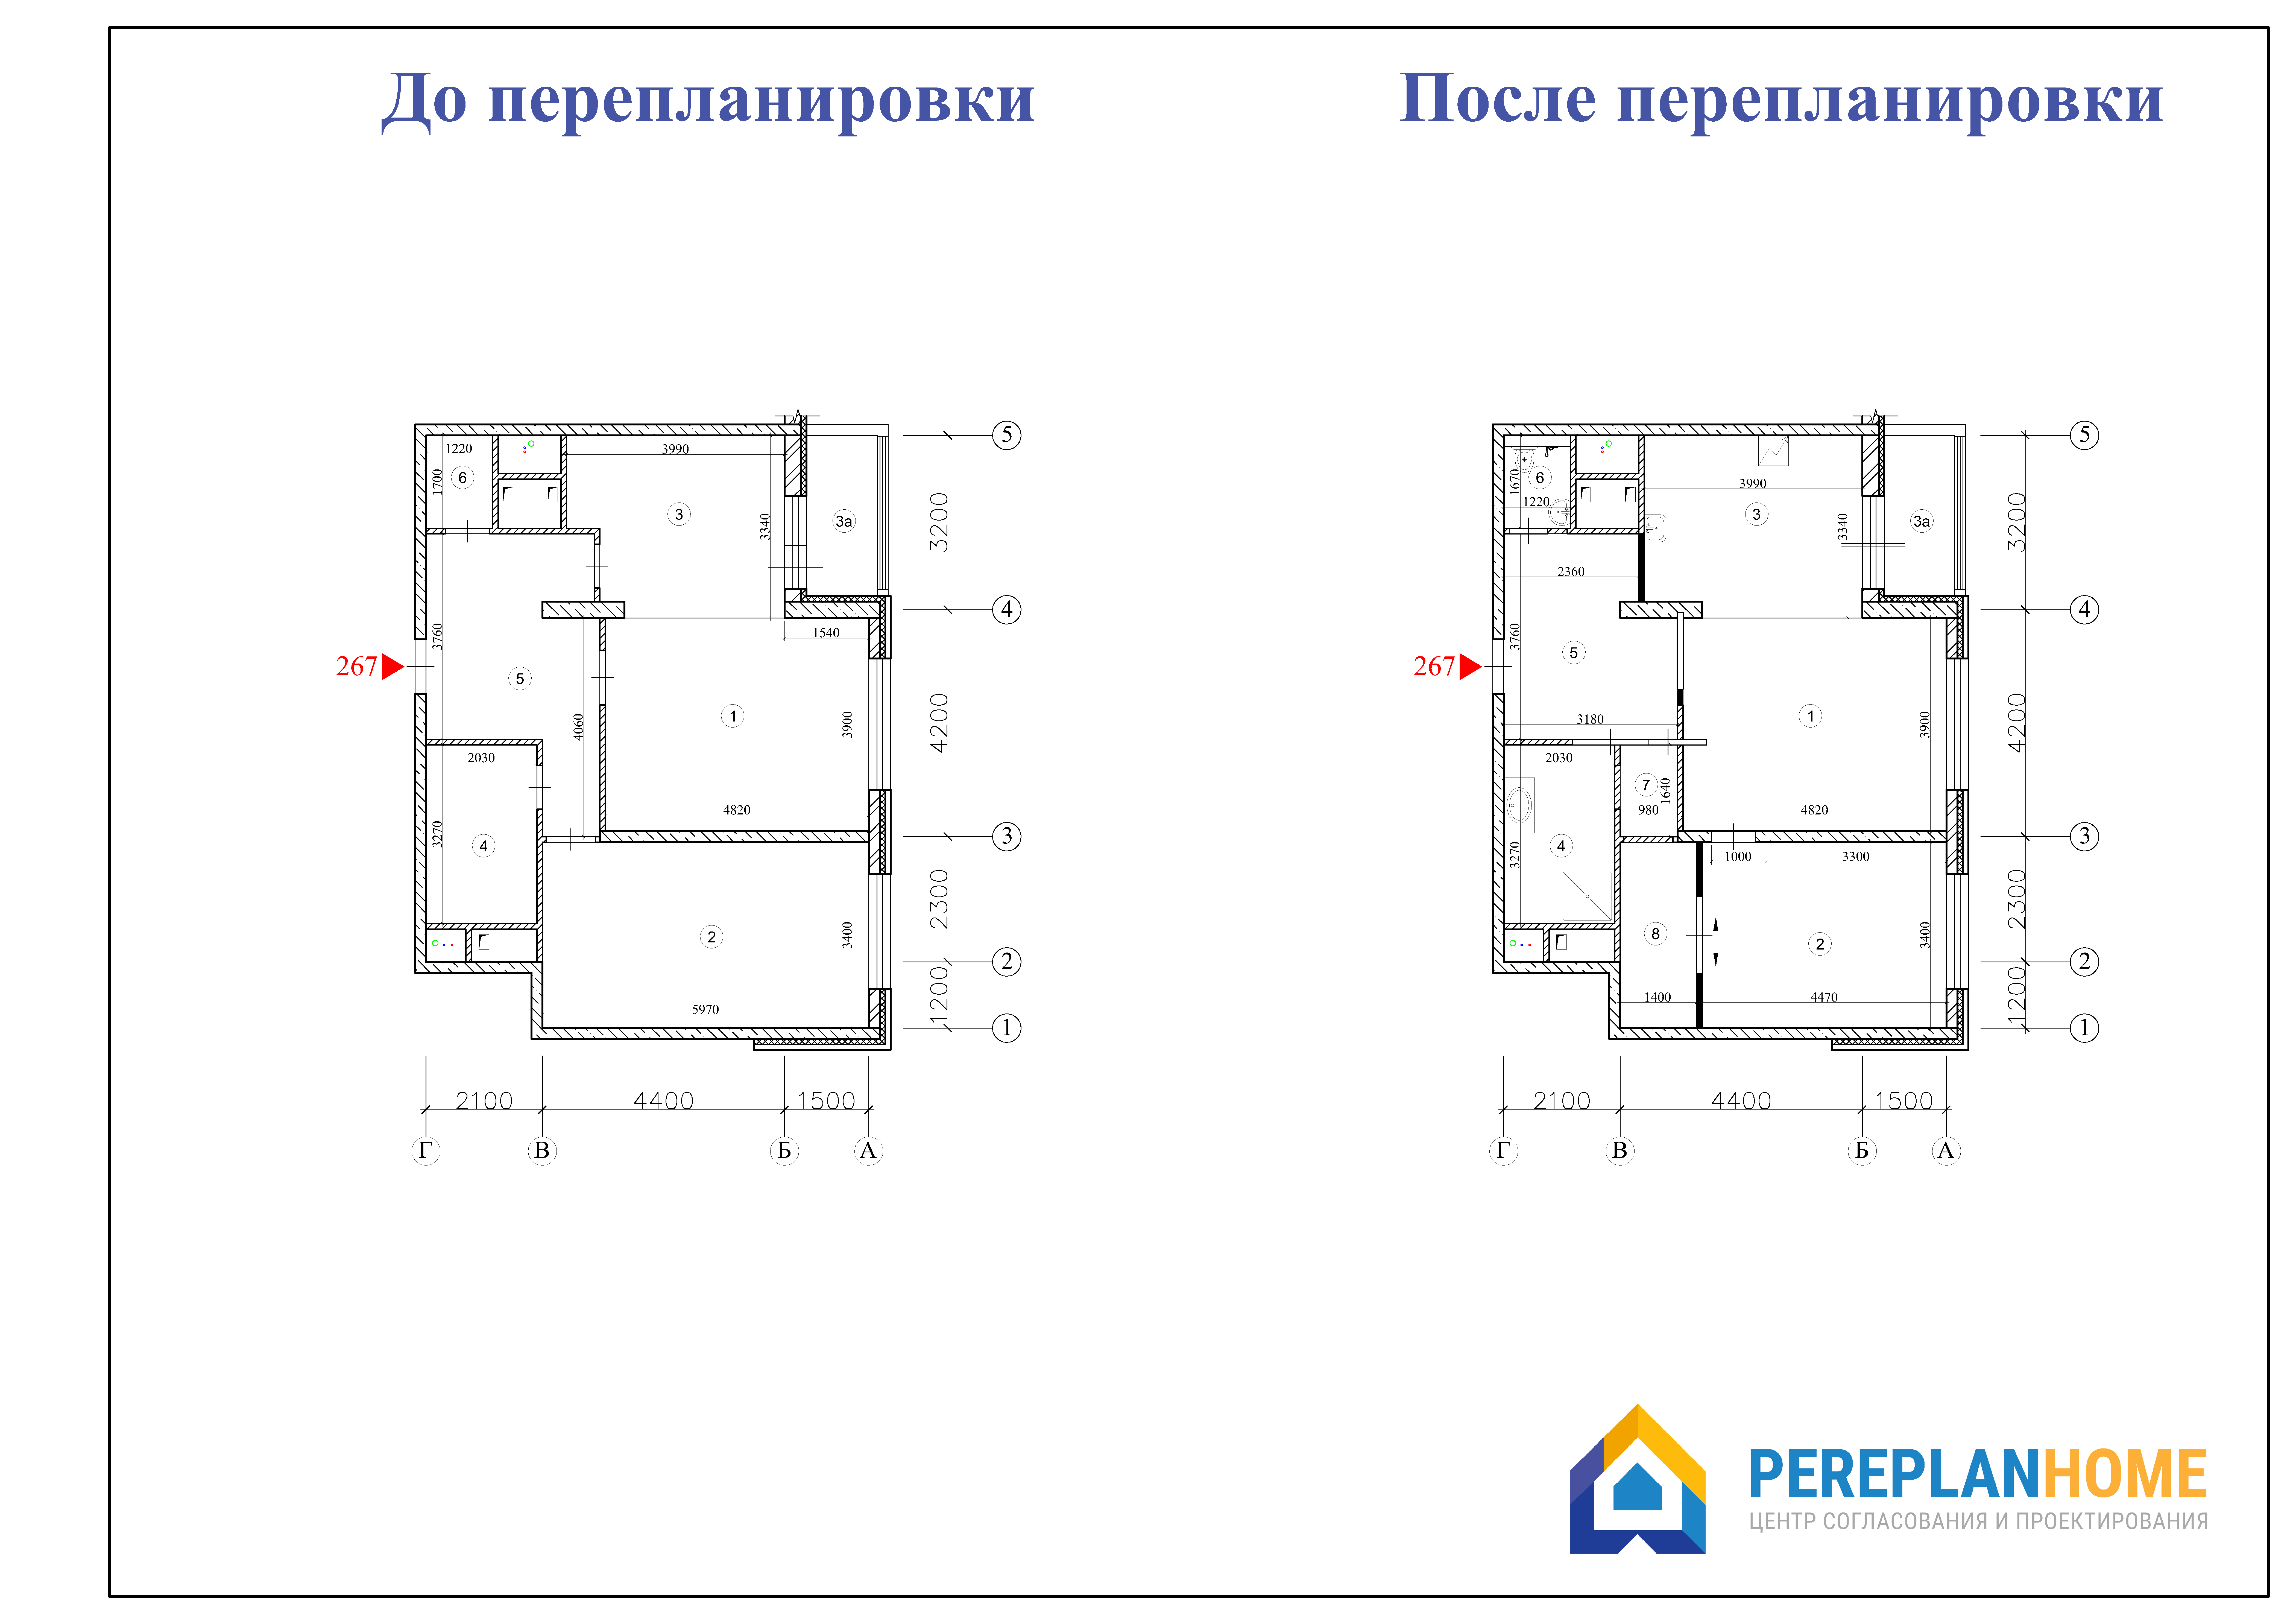 Реконструкция перепланировка переустройство. План перепланировки квартиры. Перепланировка чертеж. Перепланировка квартиры чертеж. План квартиры до и после перепланировки.